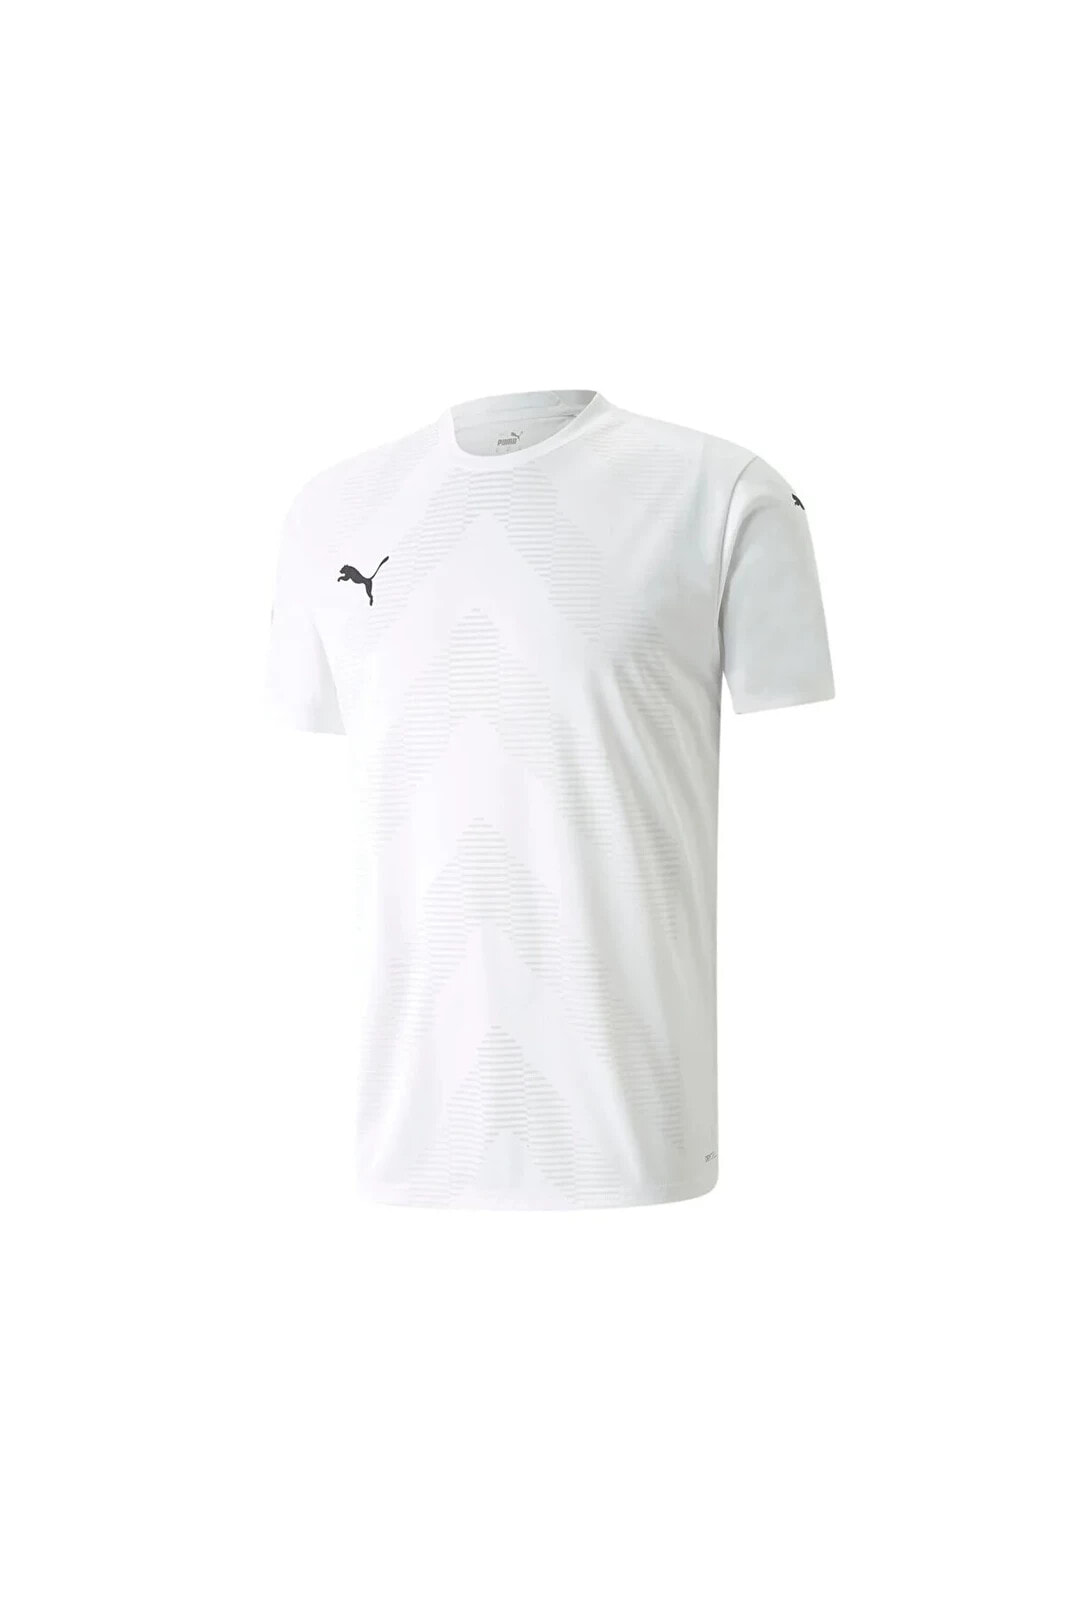 Teamglory Jersey Erkek Futbol Forması 70501704 Beyaz